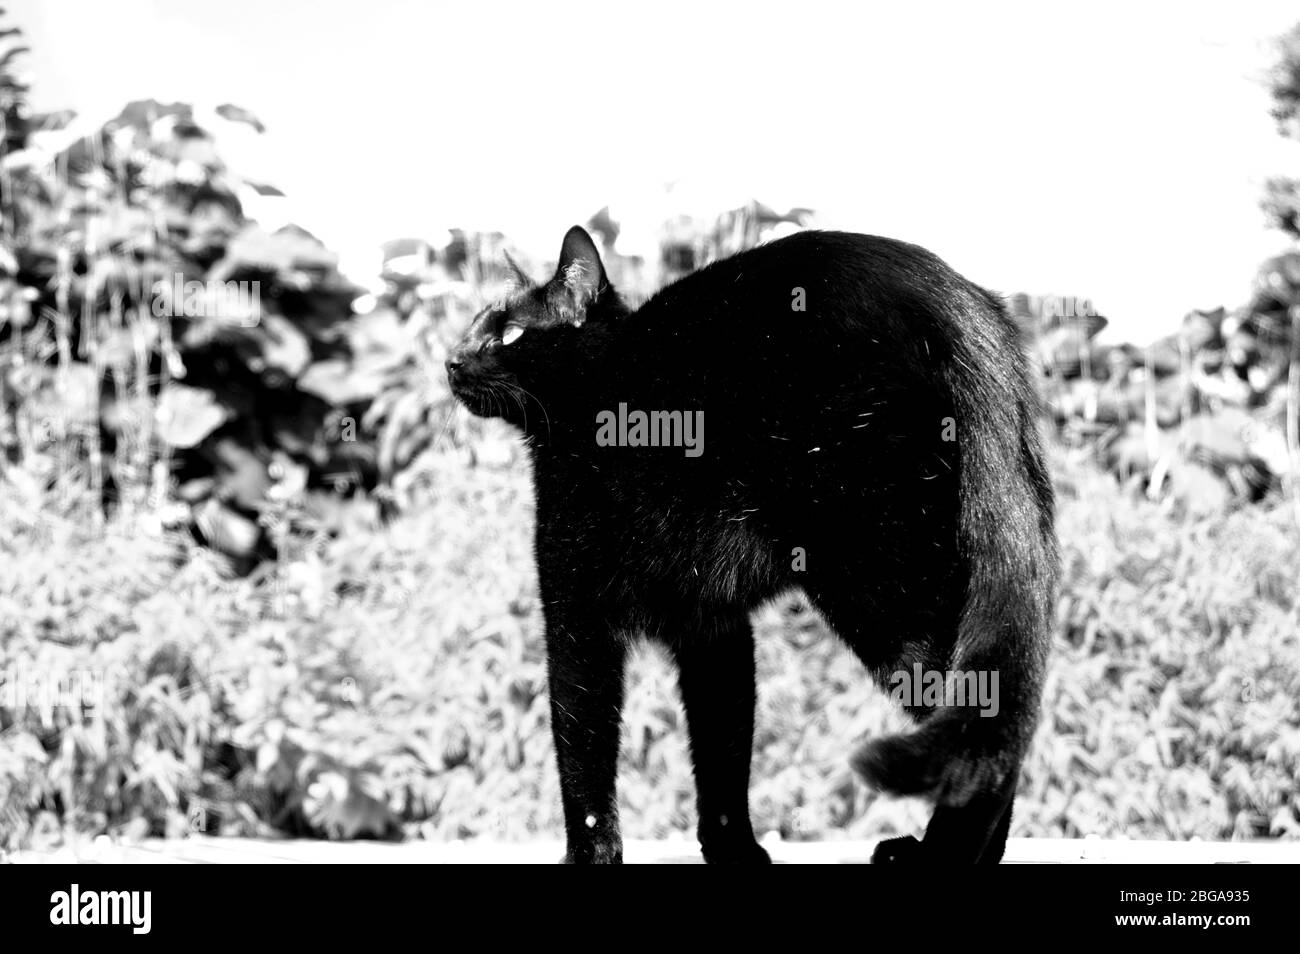 Beautiful and majestic black cat posing Stock Photo - Alamy